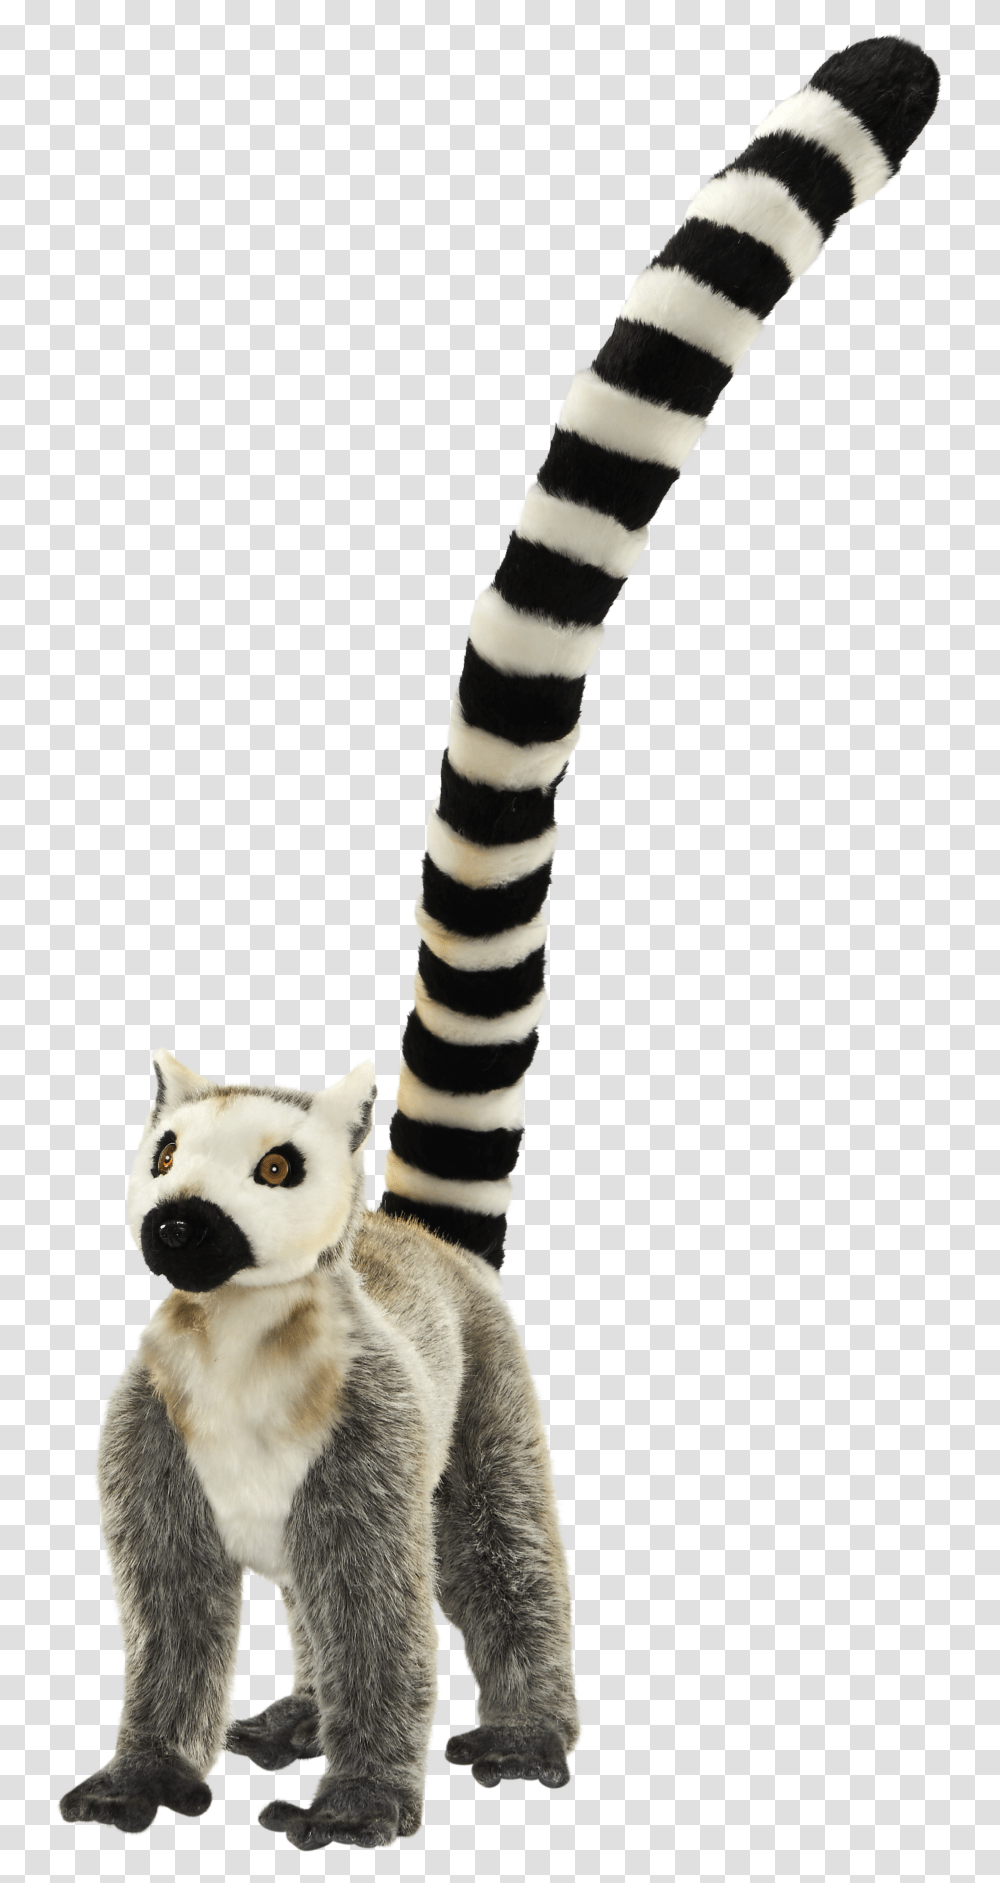 Lemur Tail Circle Dial Icon, Mammal, Animal, Wildlife, Cat Transparent Png